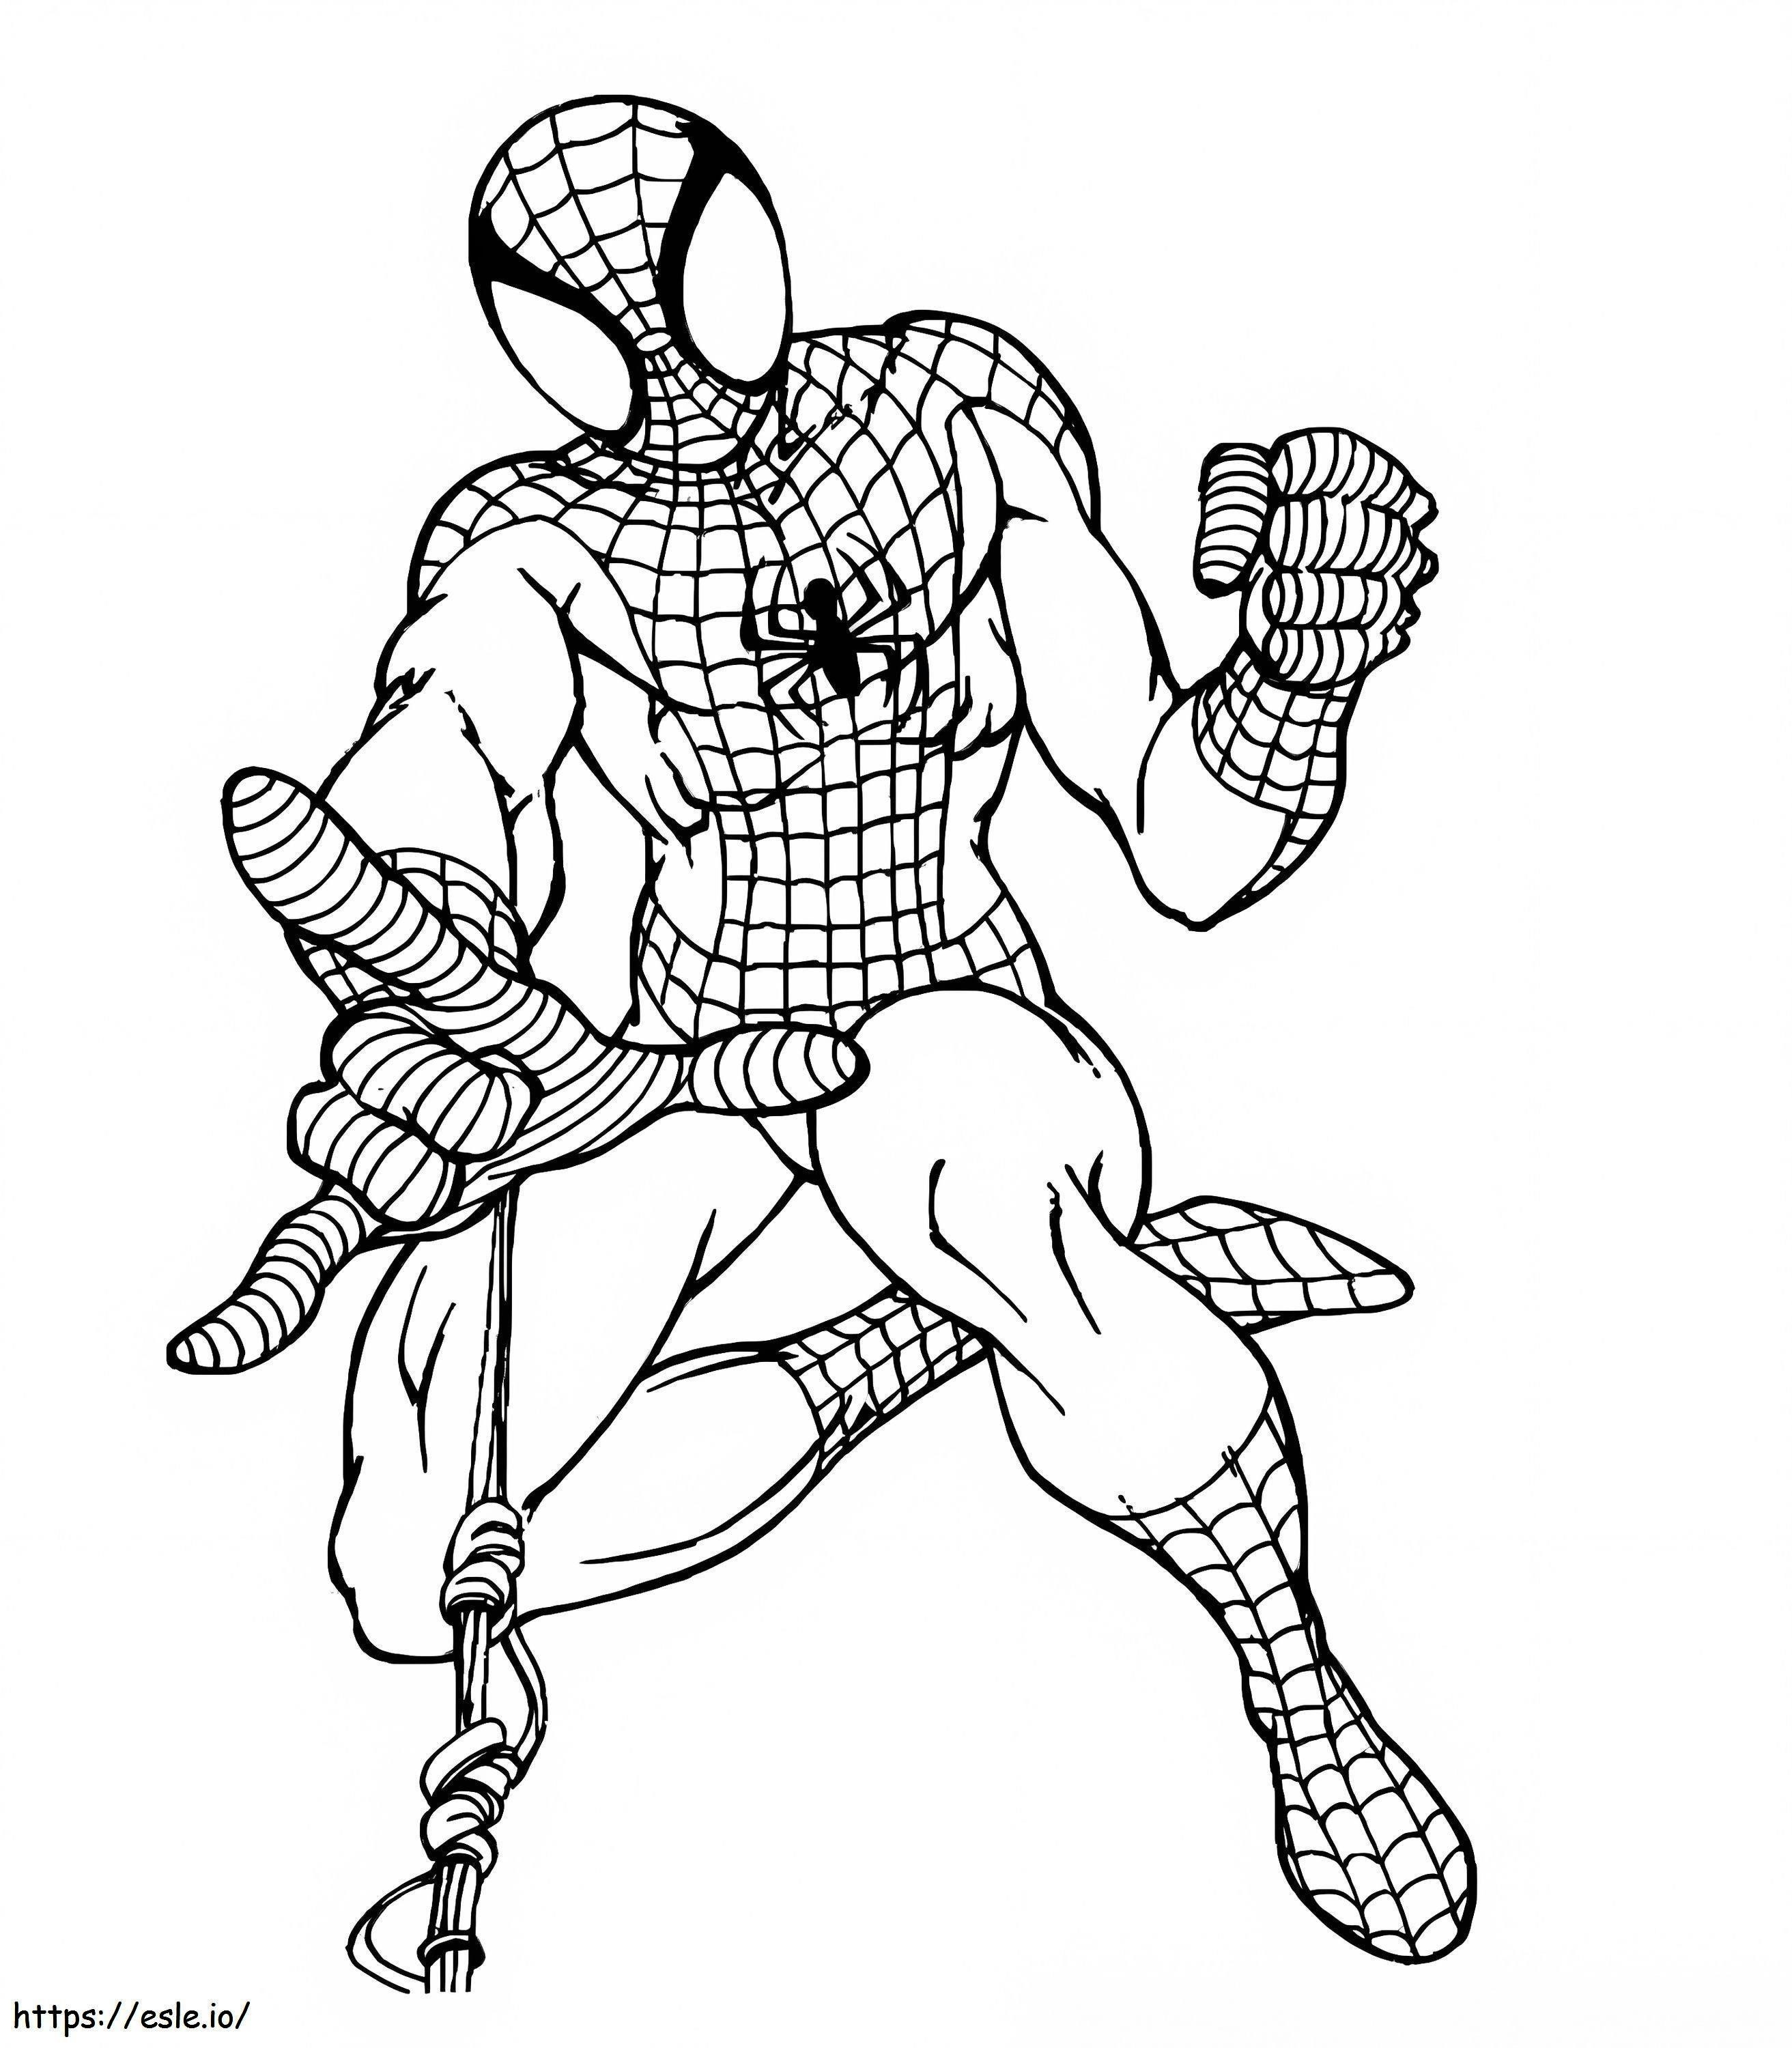 Eenvoudige tekening van Spider-Man kleurplaat kleurplaat